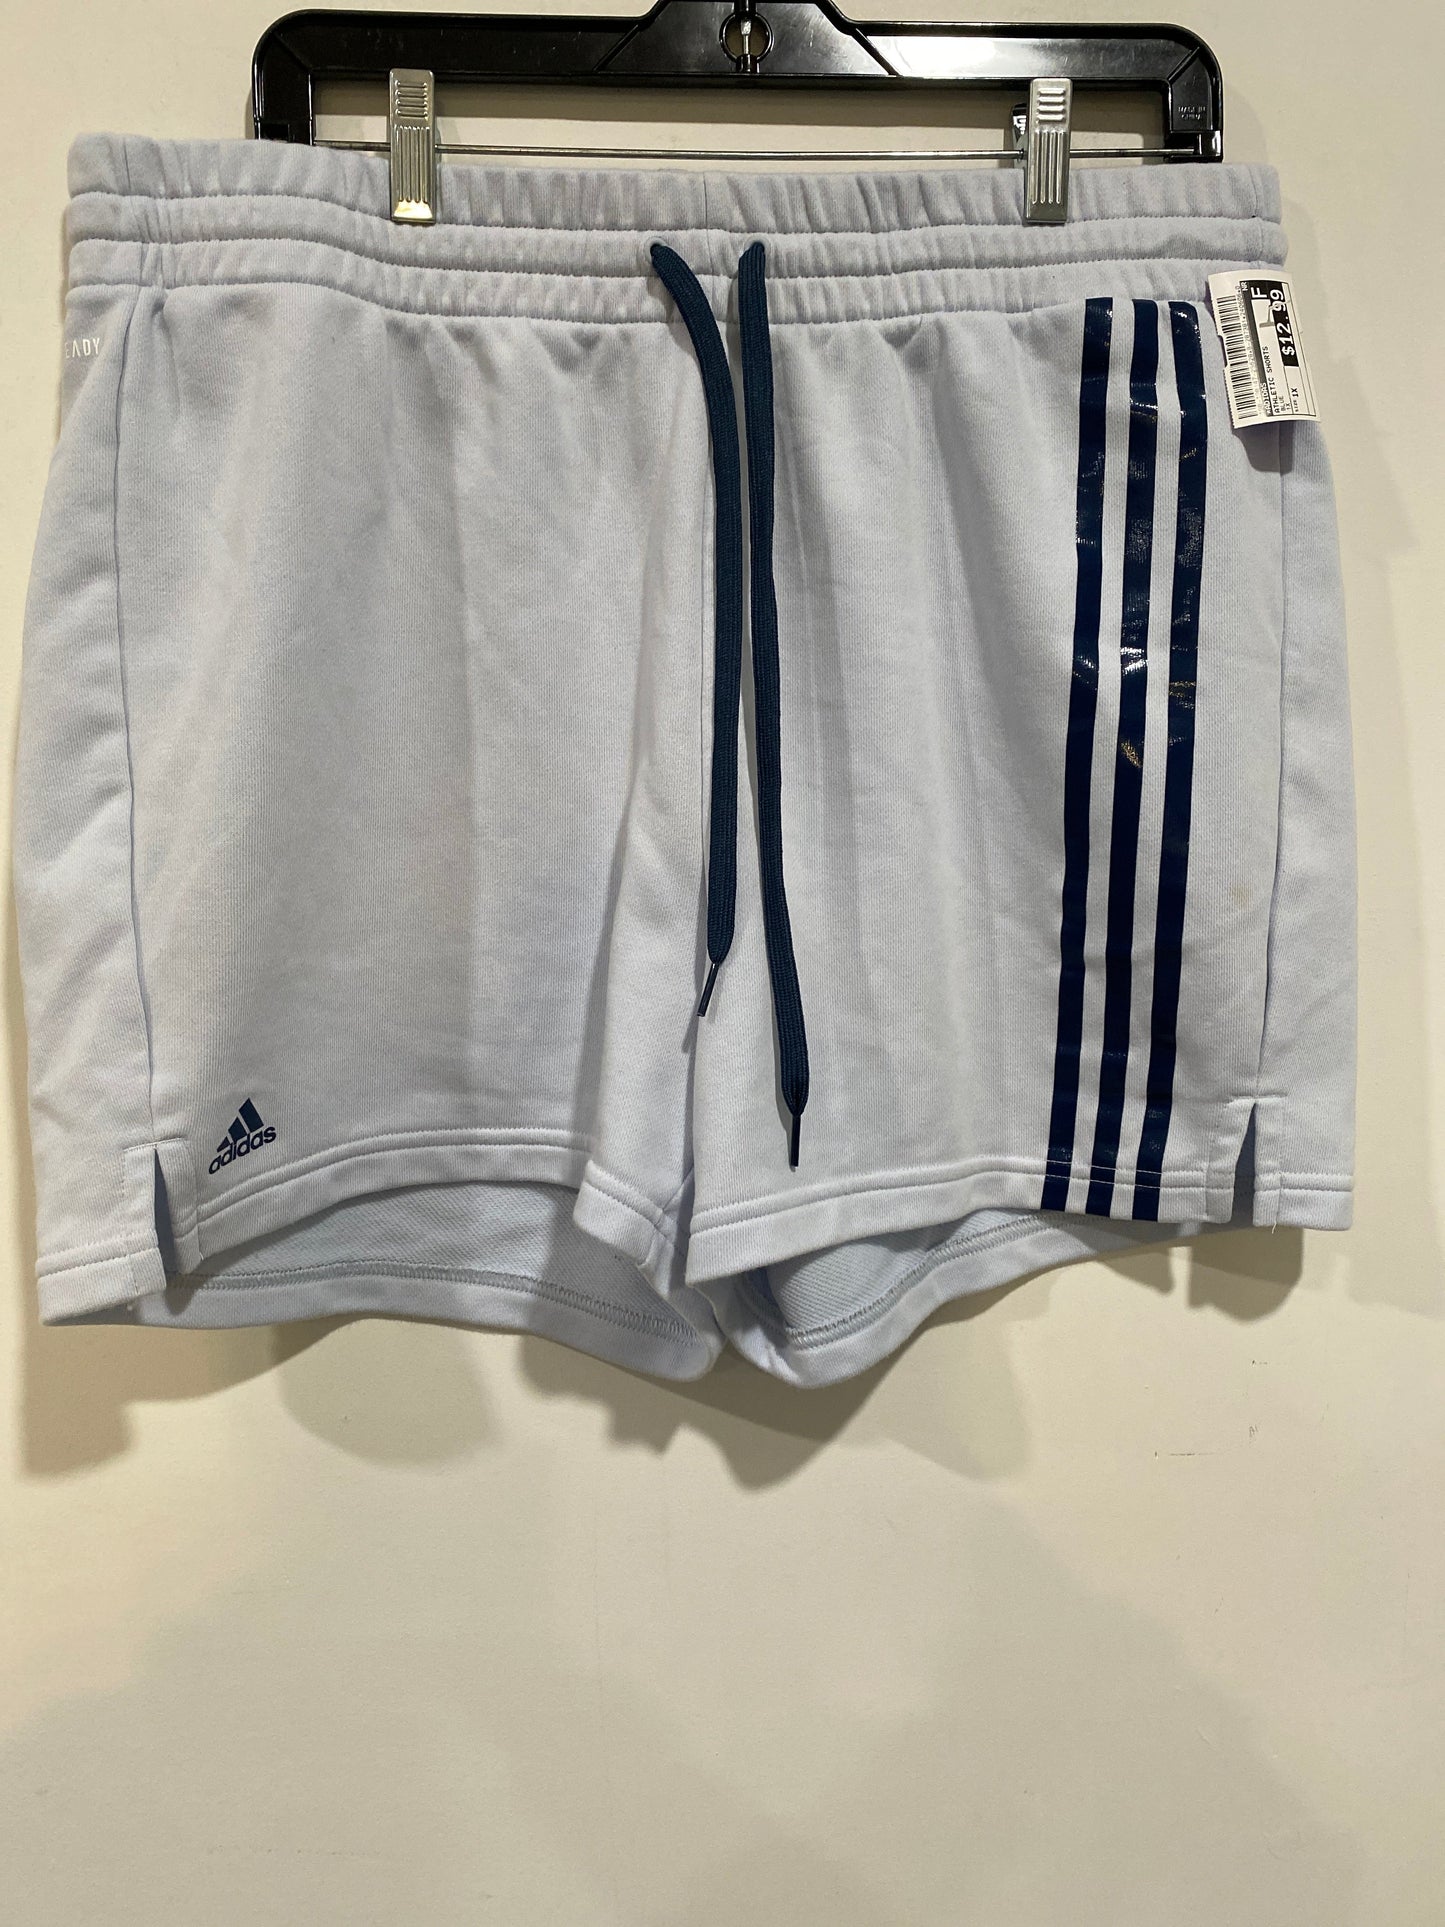 Blue Athletic Shorts Adidas, Size 1x